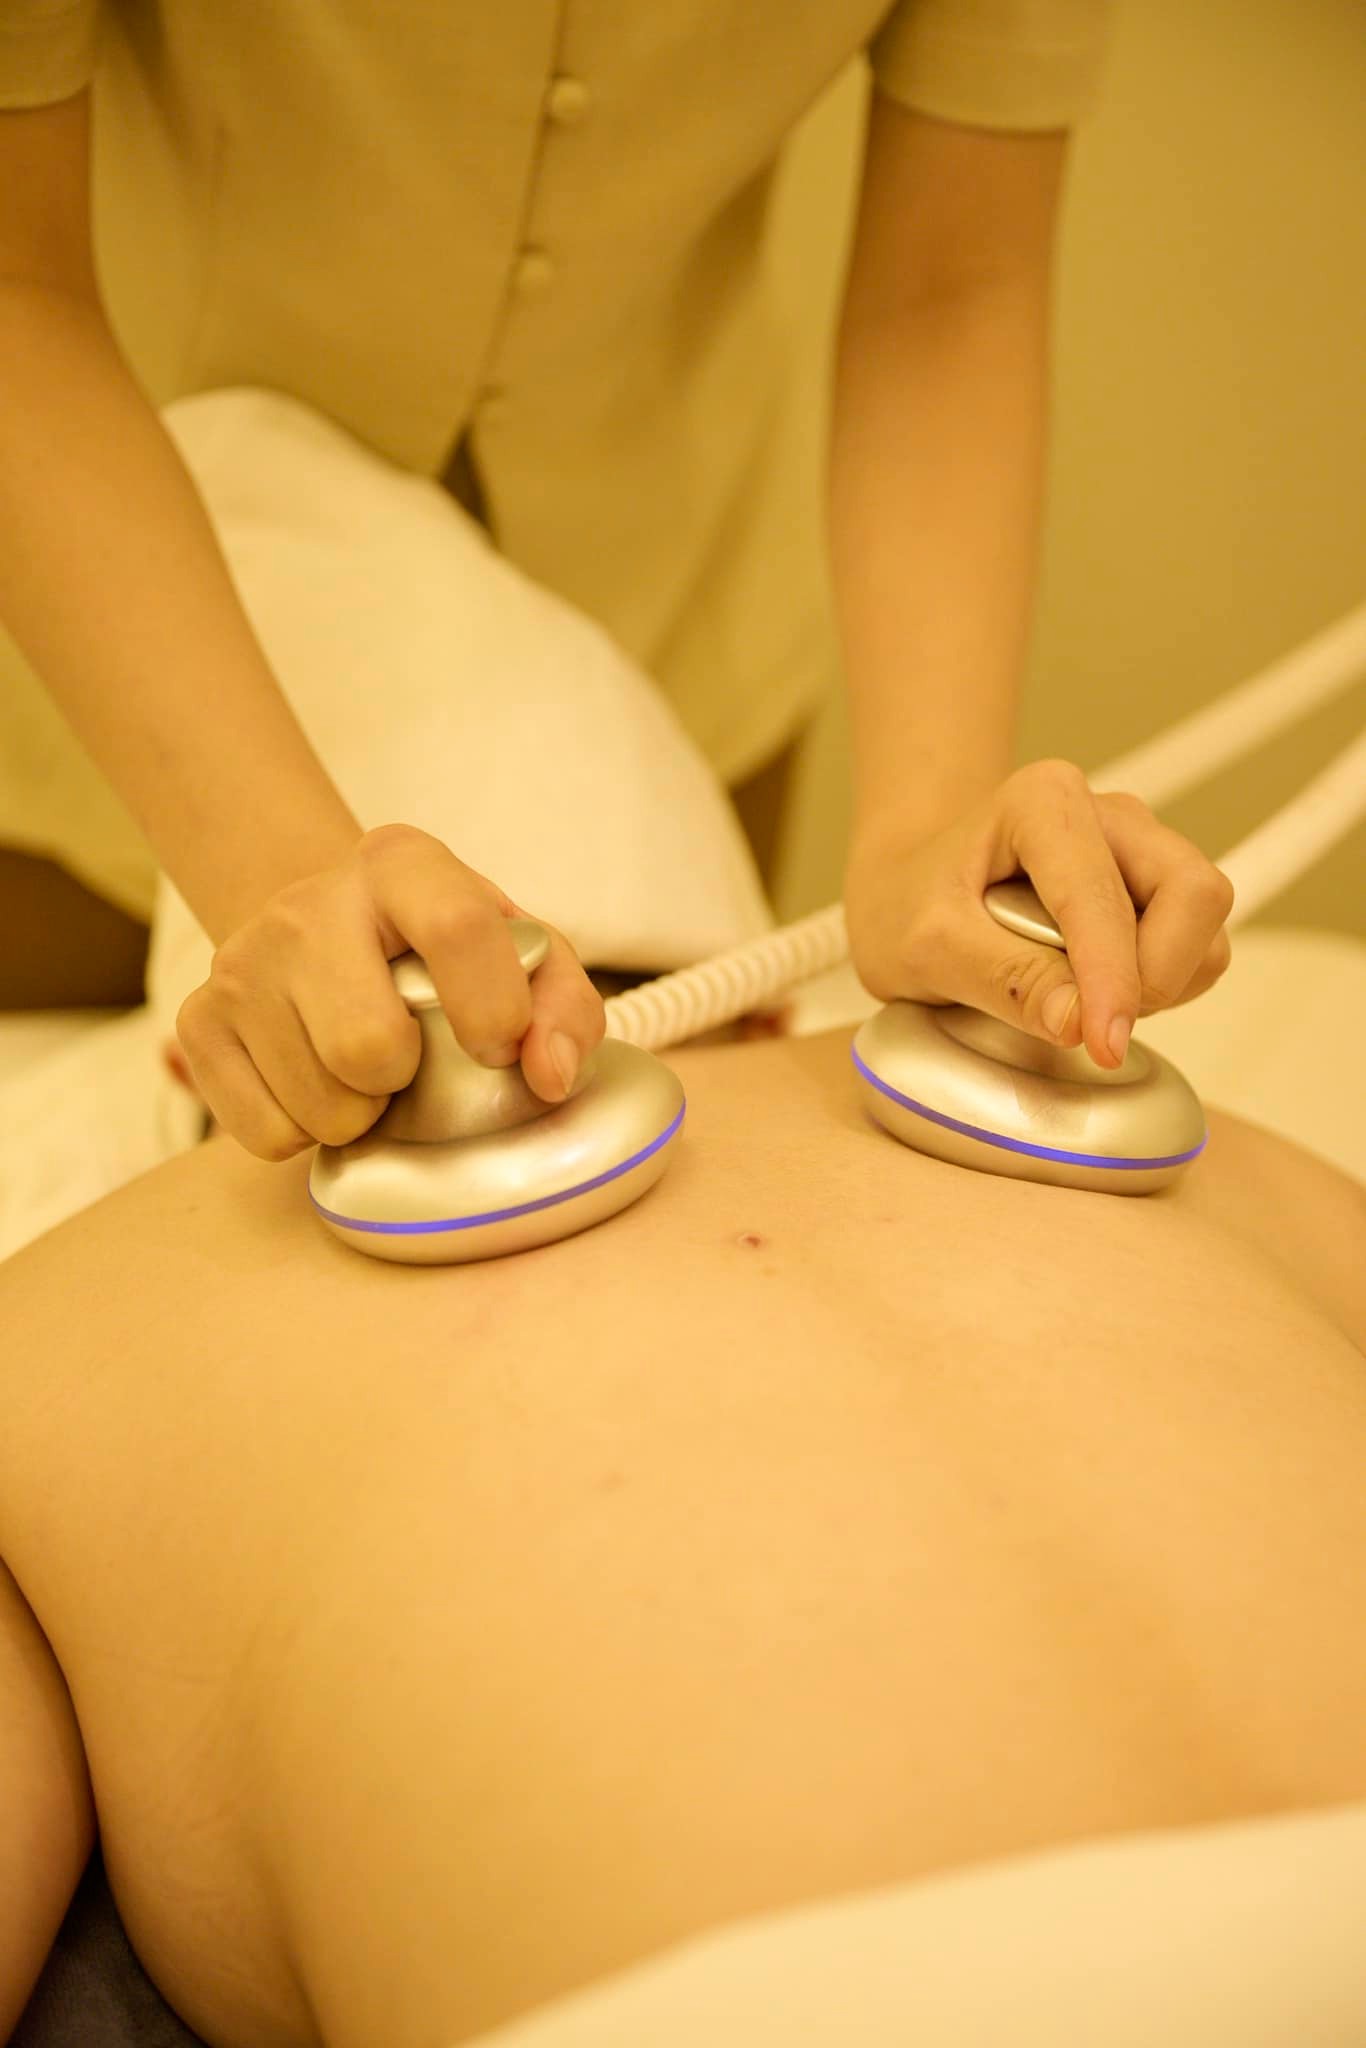 Massage body giúp loại bỏ các độc tố trong cơ thể